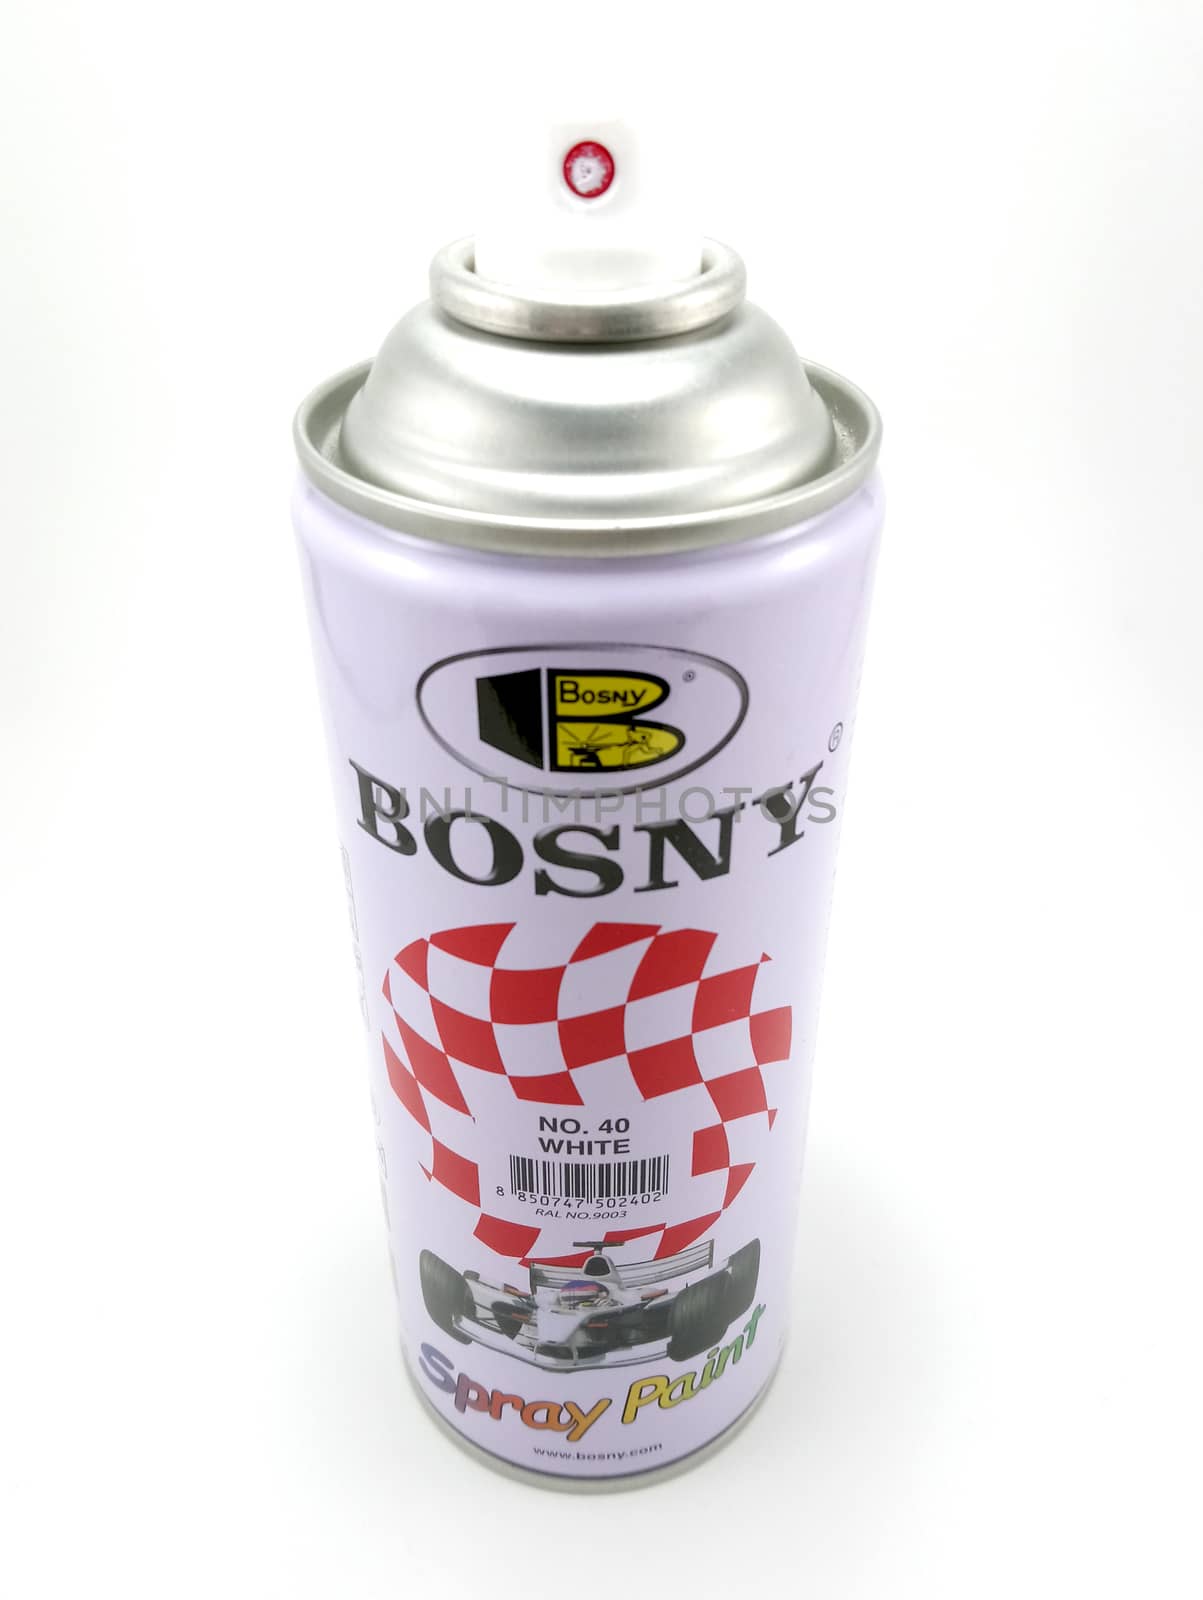 Bosny spray paint in Manila, Philippines by imwaltersy